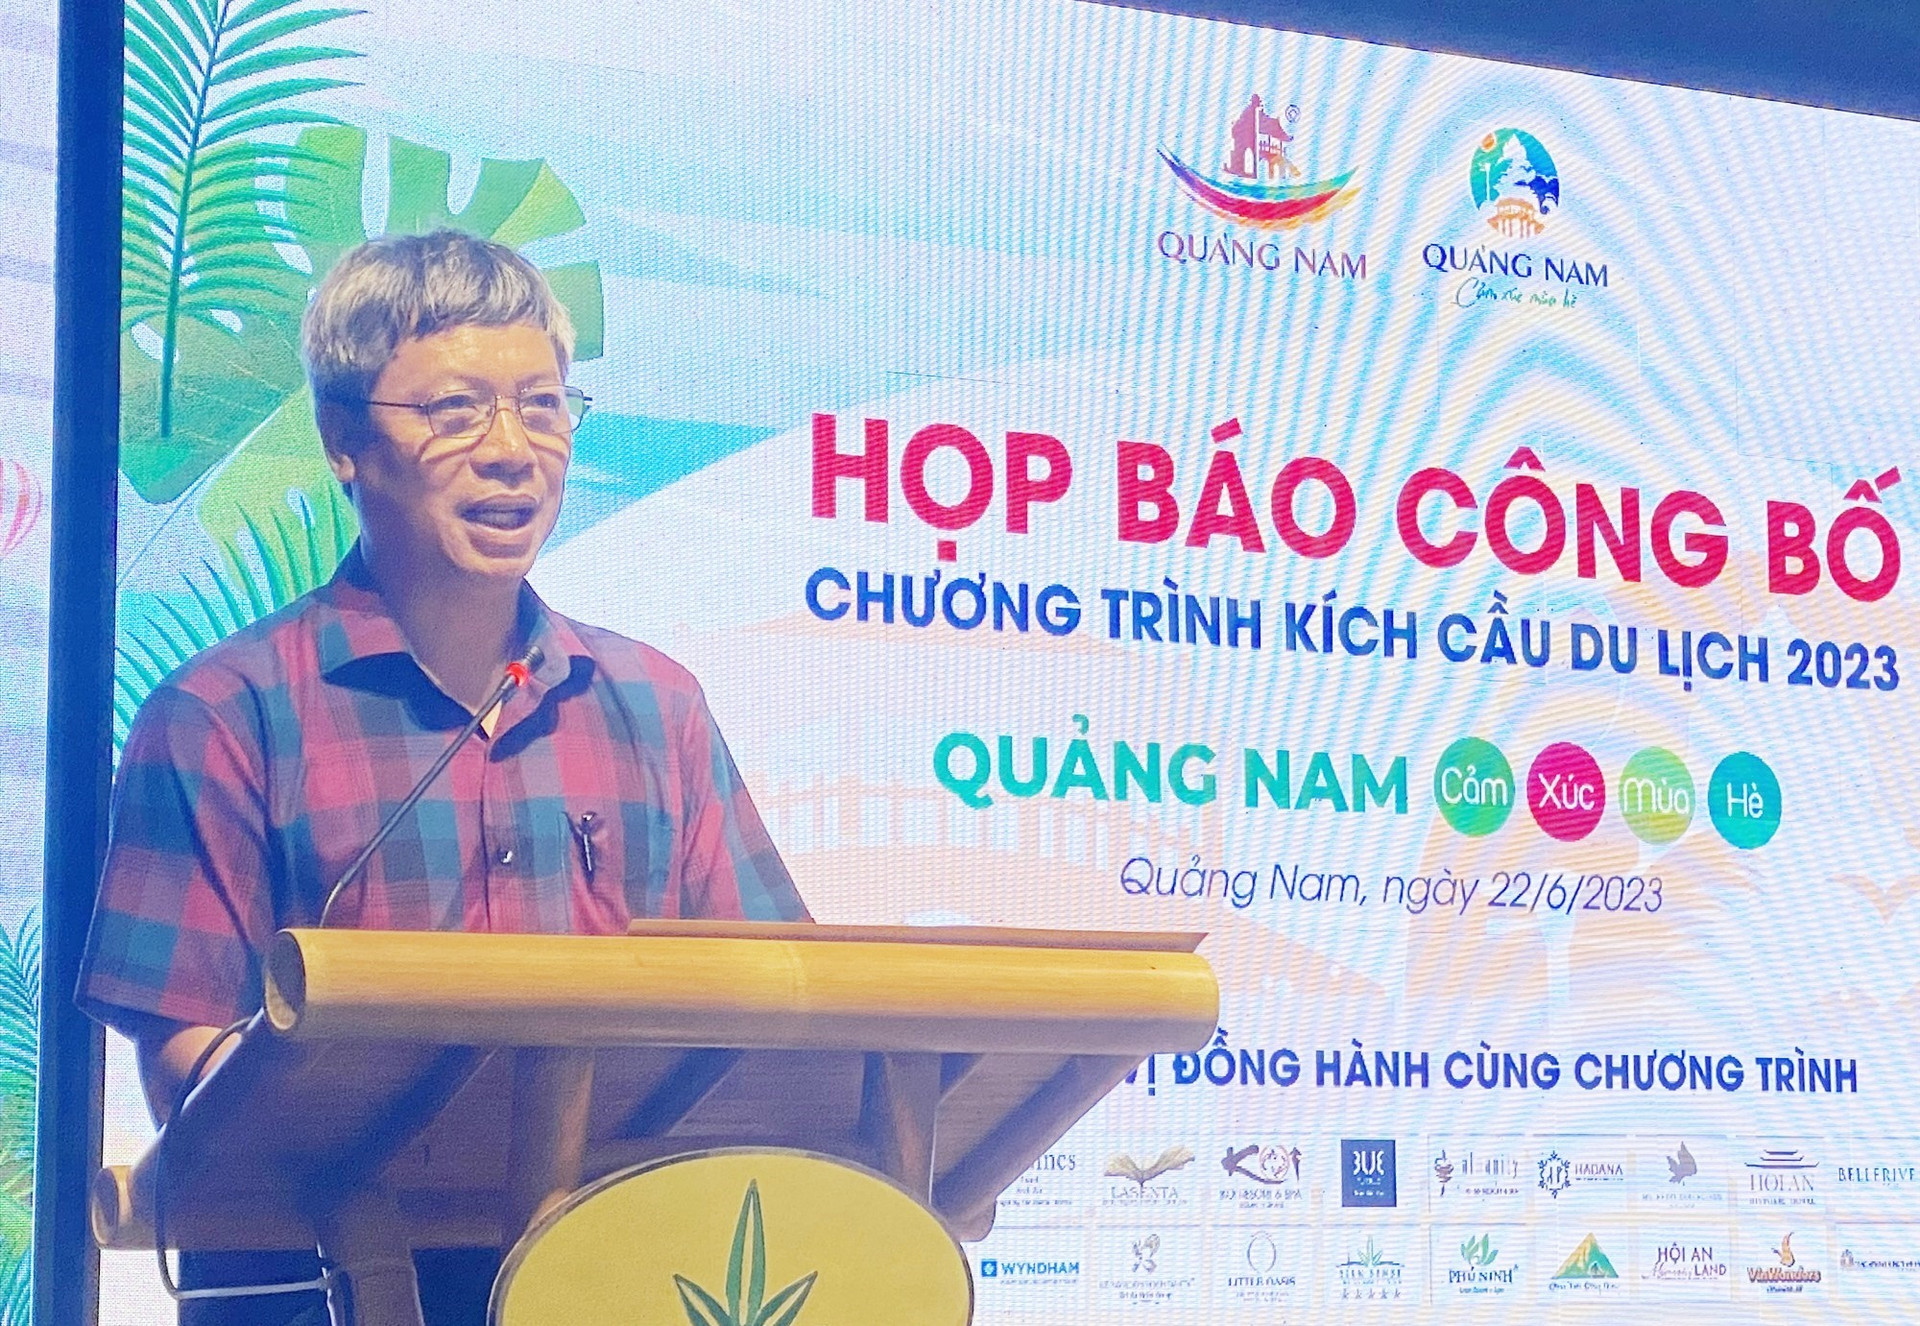 Phó Chủ tịch UBND tỉnh Hồ Quang Bửu tin tưởng chương trình kích cầu du lịch sẽ thành công. Ảnh: V.L